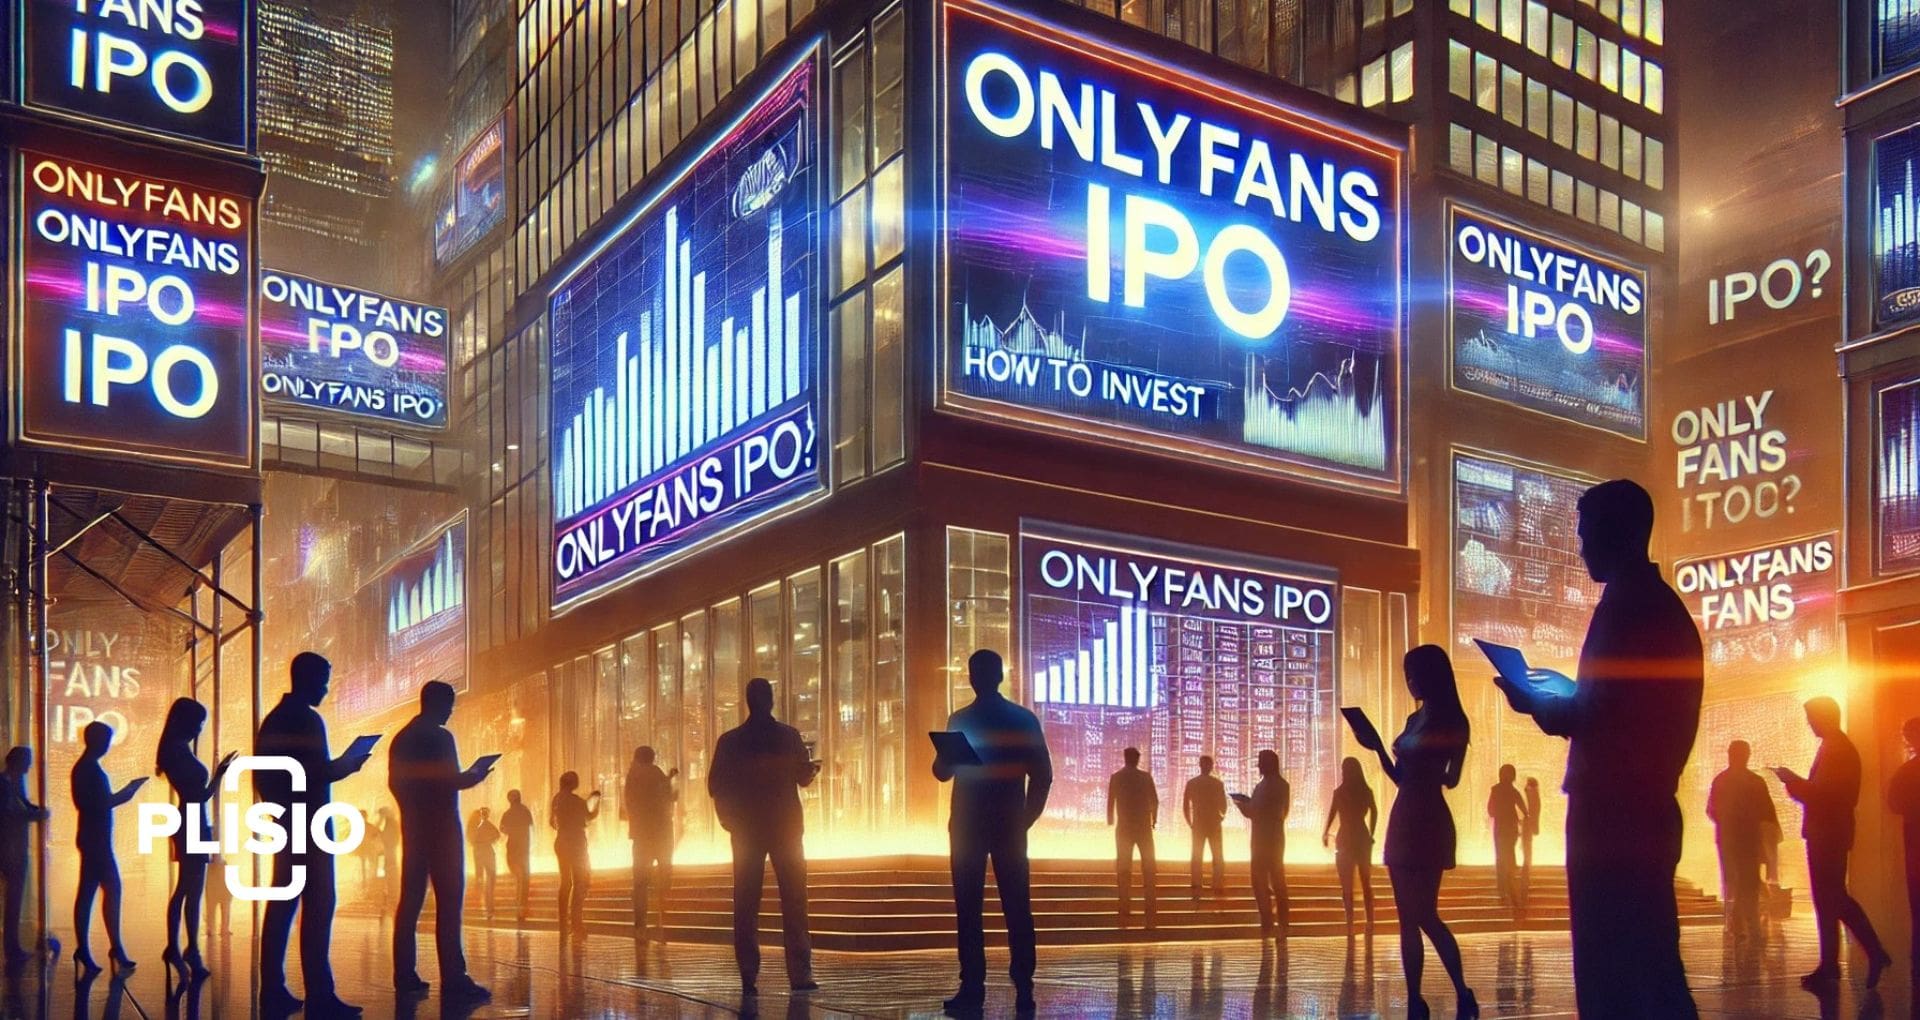 سهم OnlyFans: كيف تستثمر في الاكتتاب العام الأولي لـ OnlyFans؟